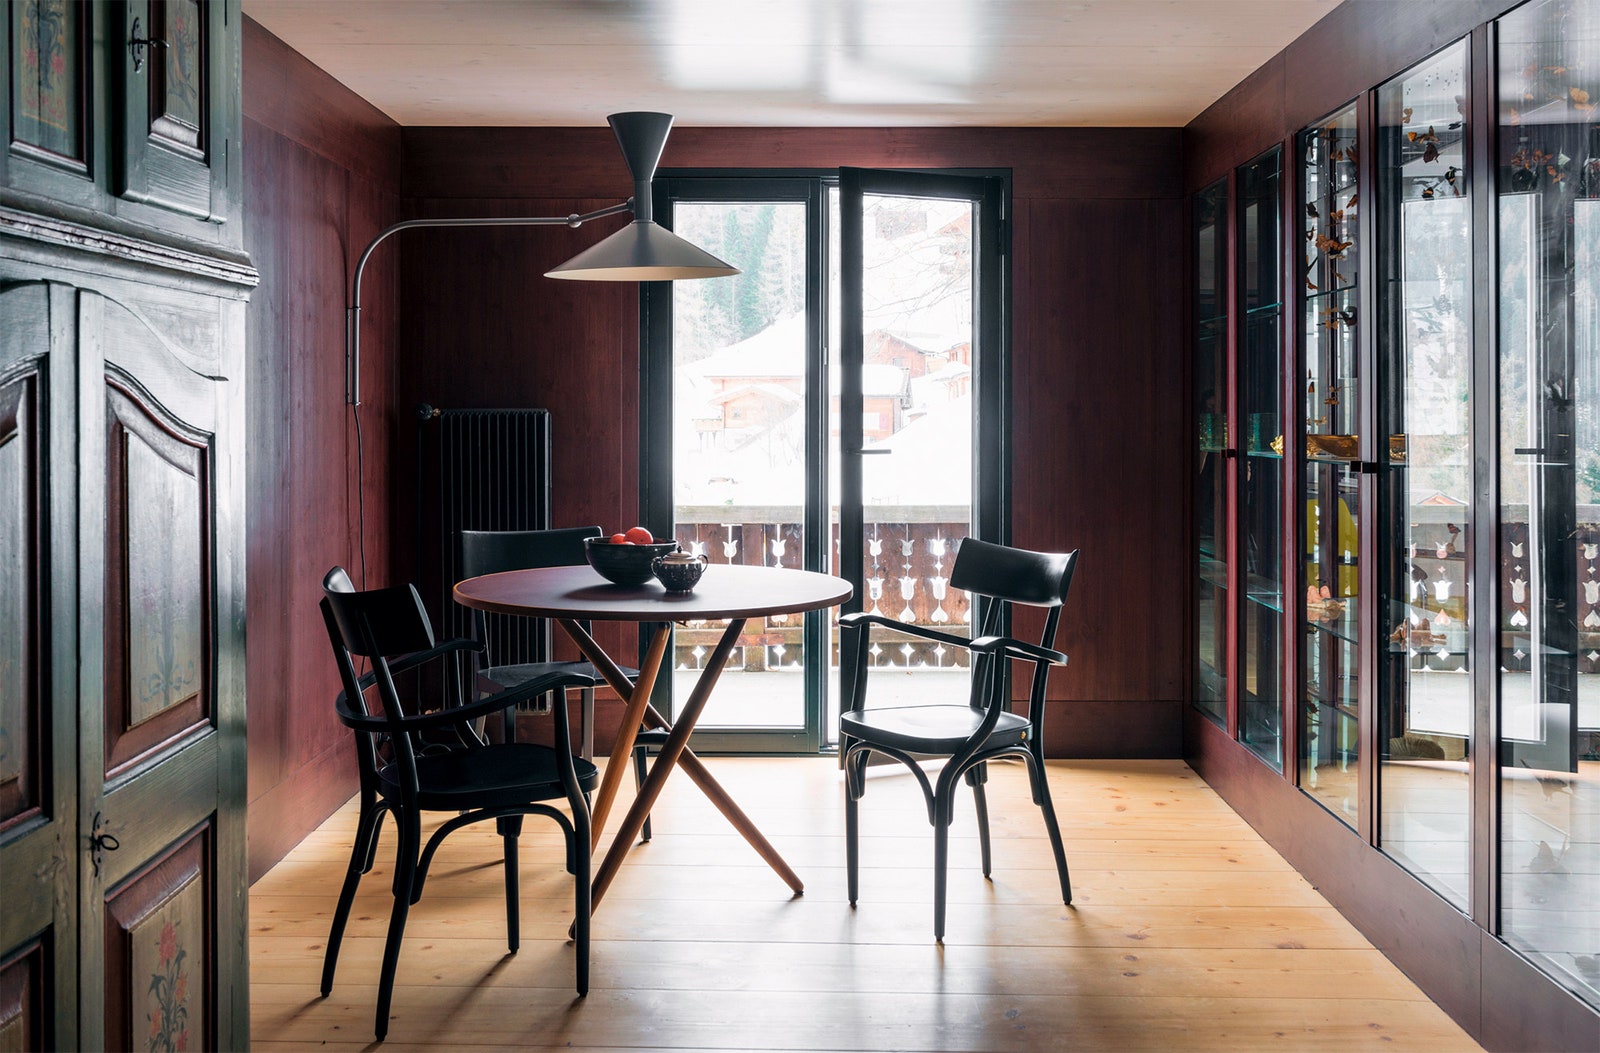 Комната для завтраков. Обеденный стол по дизайну Йюрга Балли для Horgenglarus стулья этой же фирмы остались со времен...